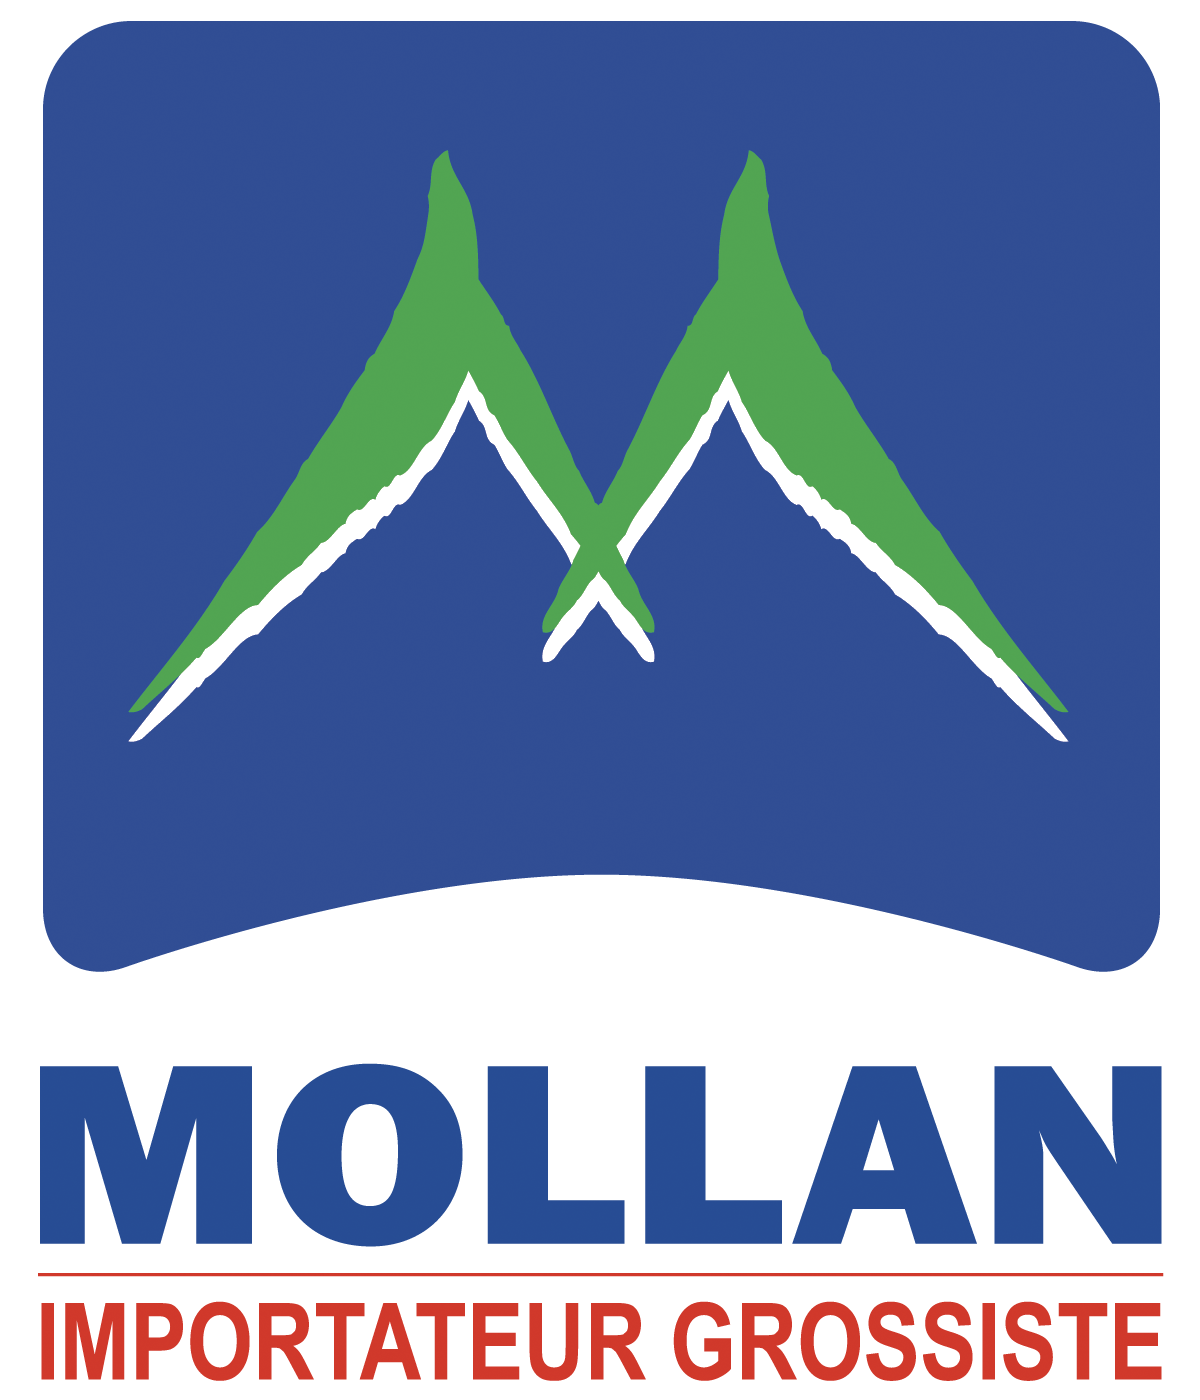 MOLLAN